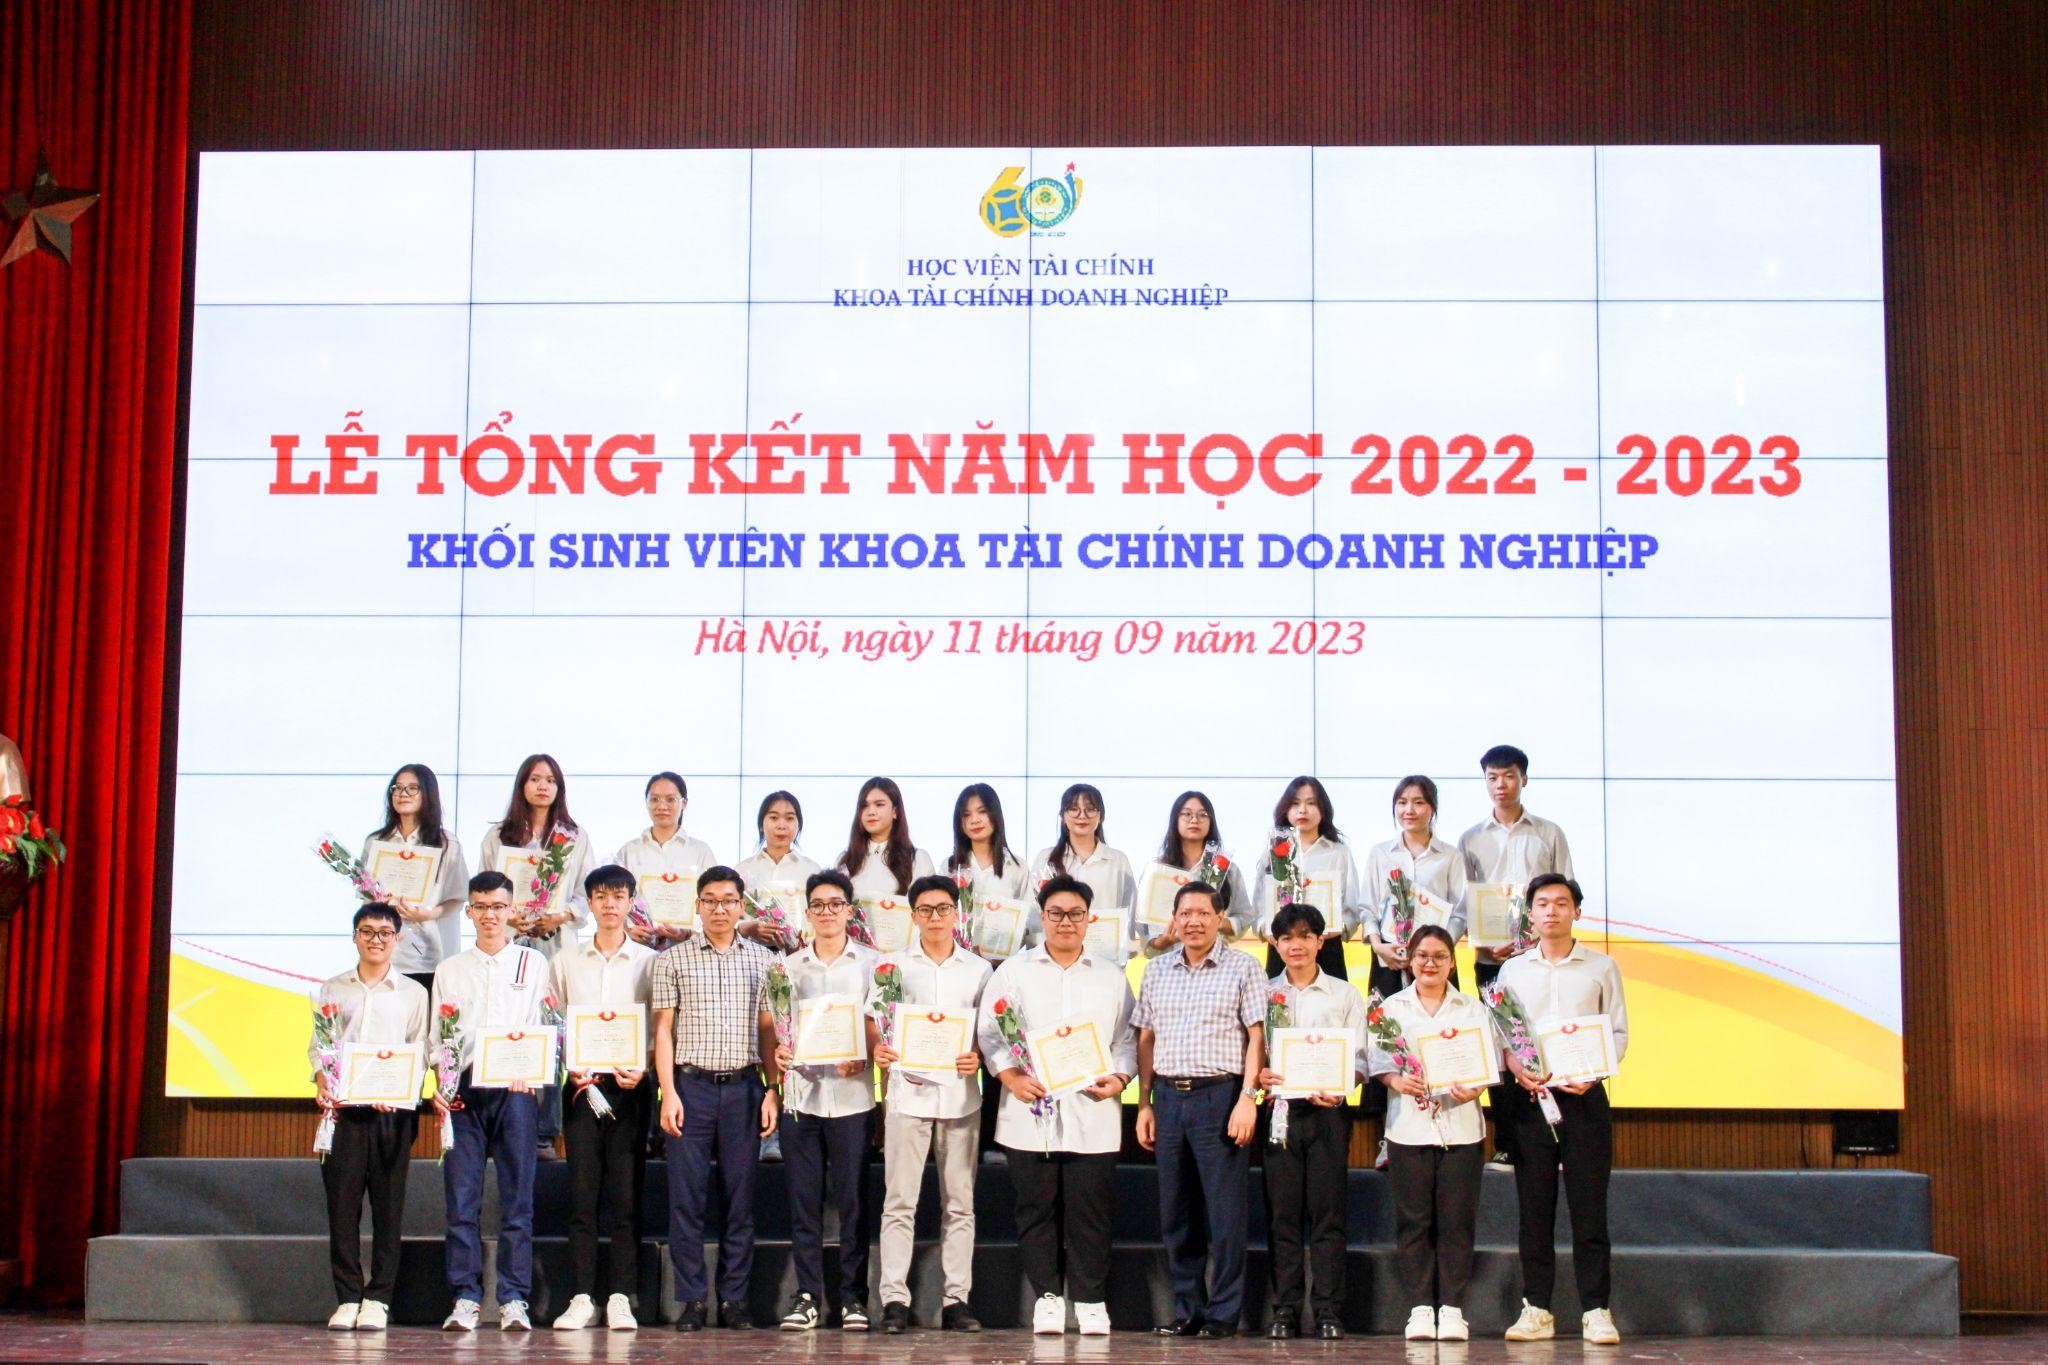 PGS.TS Vũ Văn Ninh - Trưởng Khoa TCDN và TS. Nguyễn Hữu Tân - Phó trưởng ban Hợp tác Quốc tế trao thưởng cho các sinh viên tiêu biểu Khóa 60 có thành tích xuất sắc trong học tậ